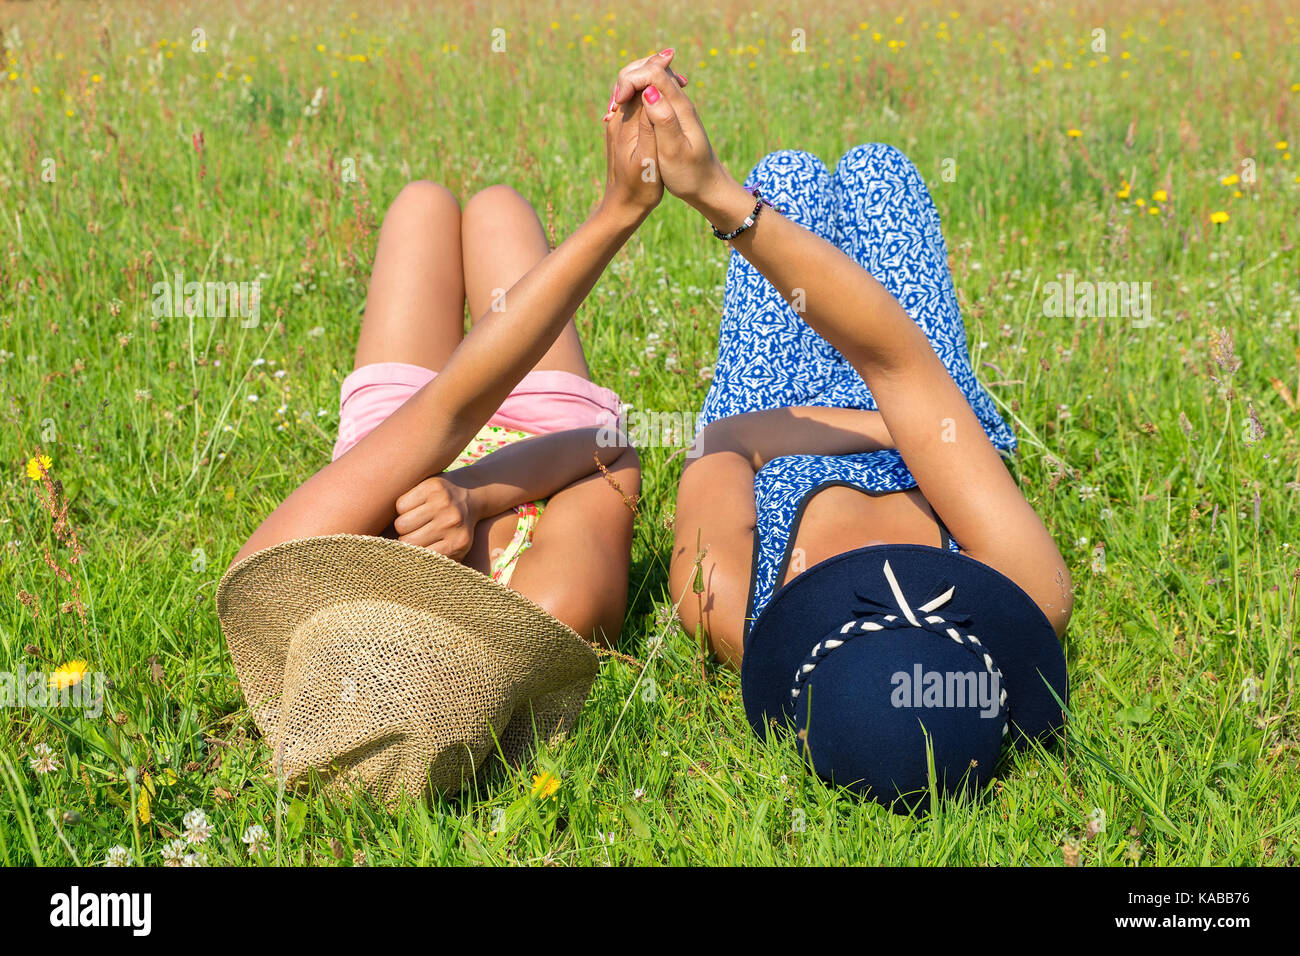 Zwei junge Frauen, die zusammen im Gras liegend Stockfoto